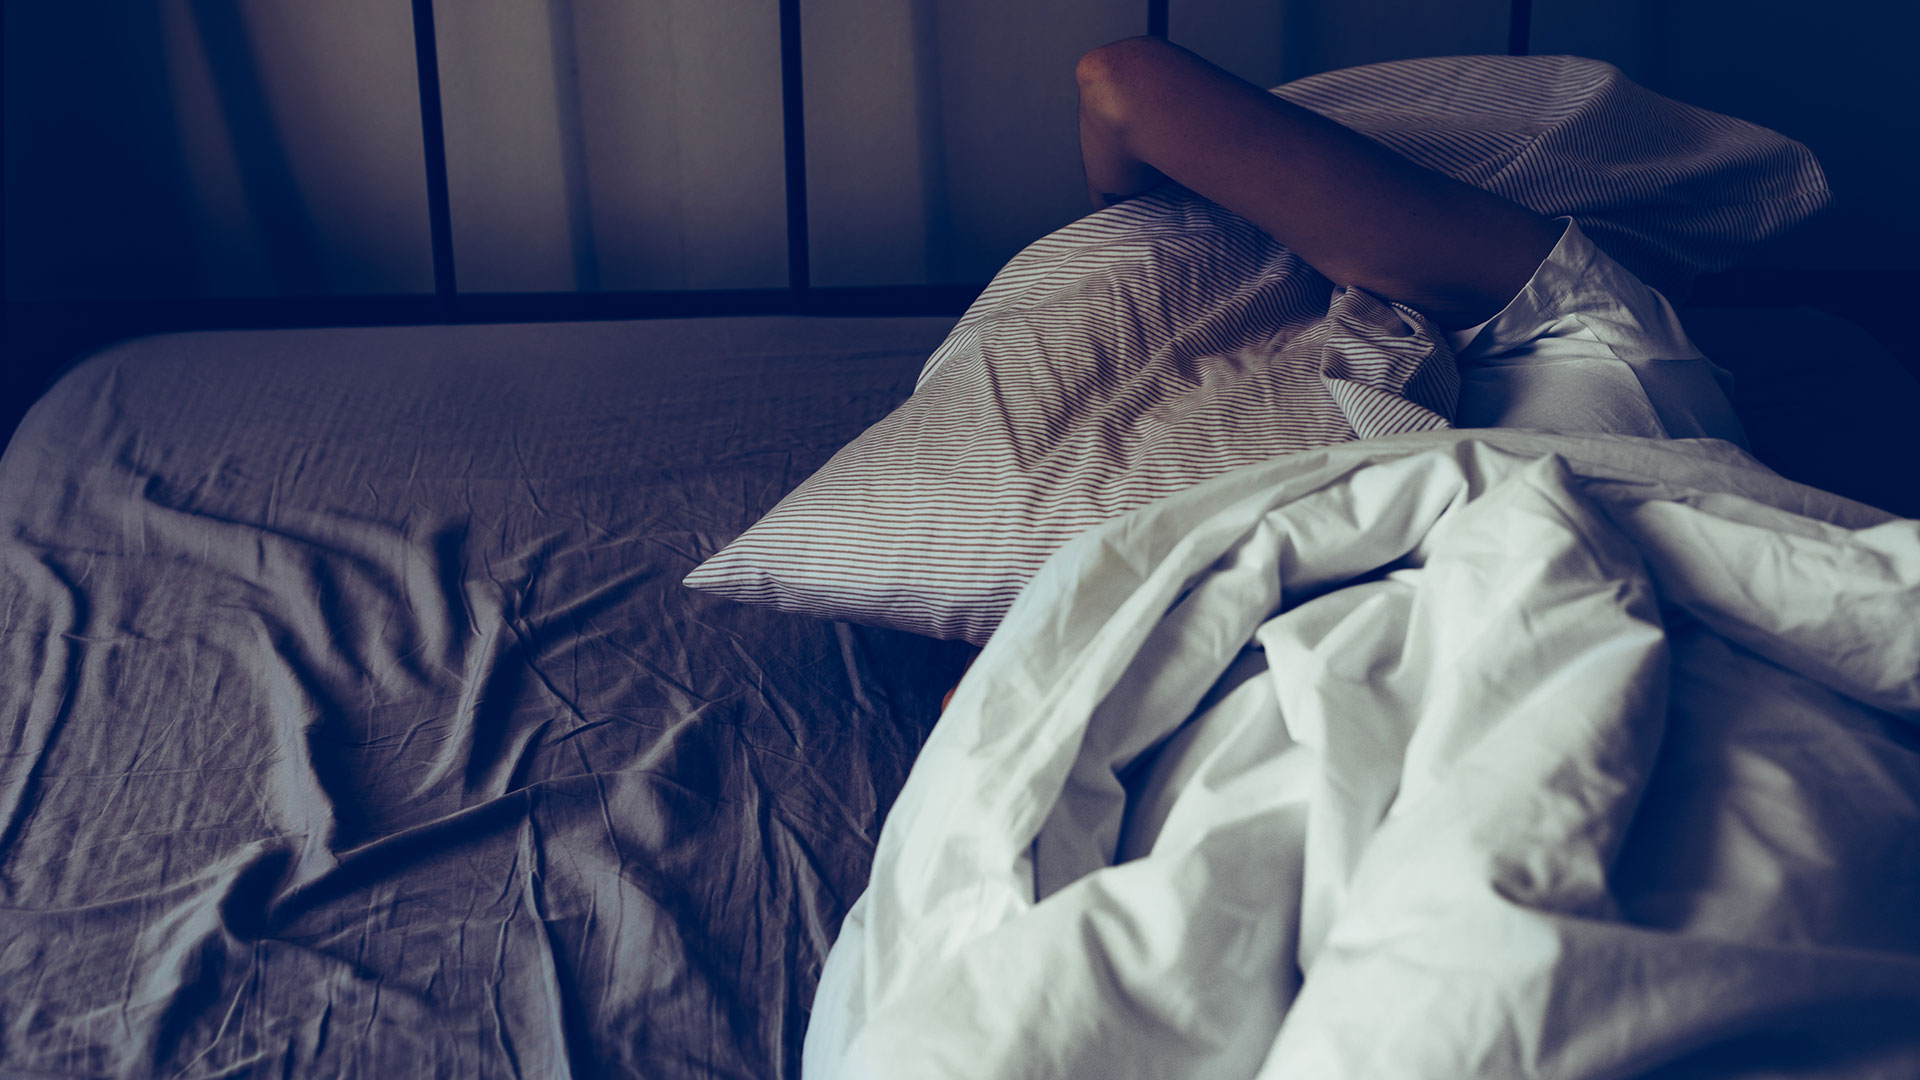 Las personas que roncan y padecen apnea del sueño, se sienten muy cansadas durante el día, les cuesta concentrarse o les duele la cabeza al despertar (Getty Images)